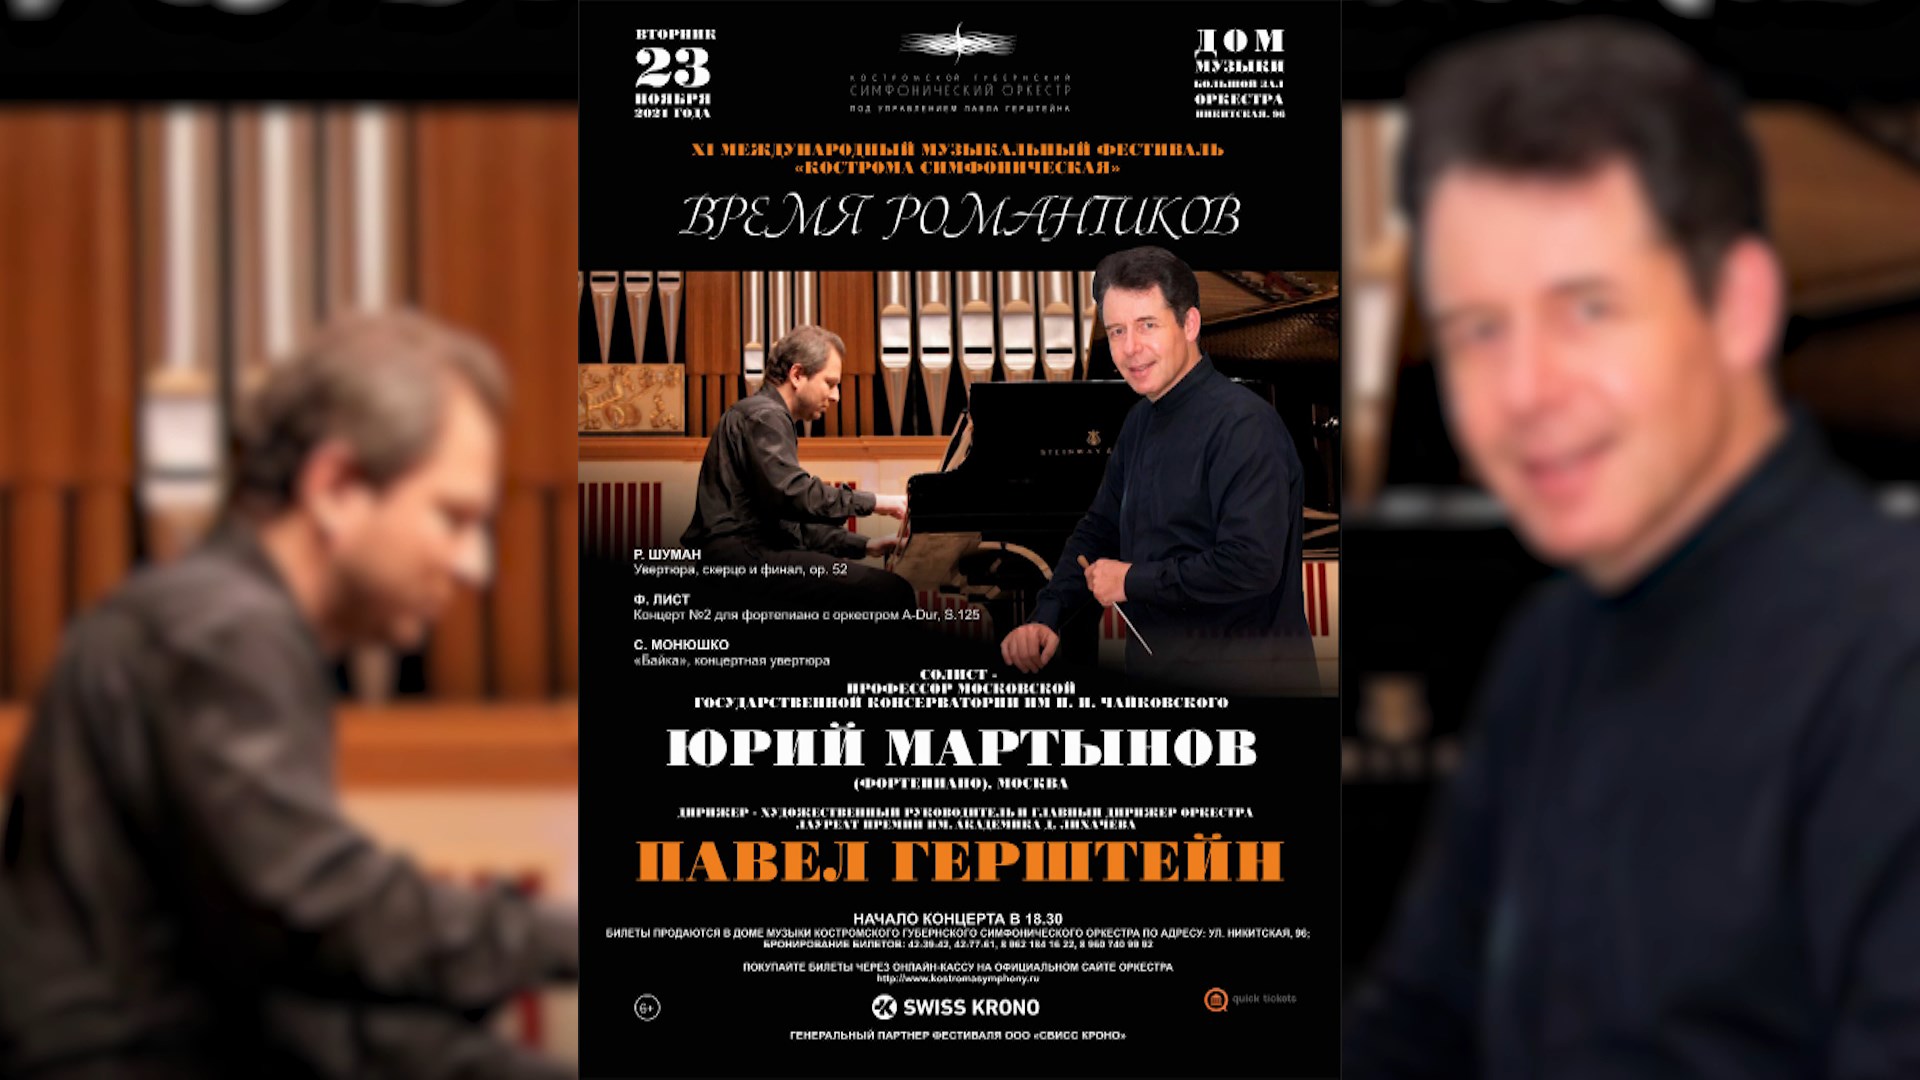 Костромской симфонический оркестр представляет «Время романтиков»